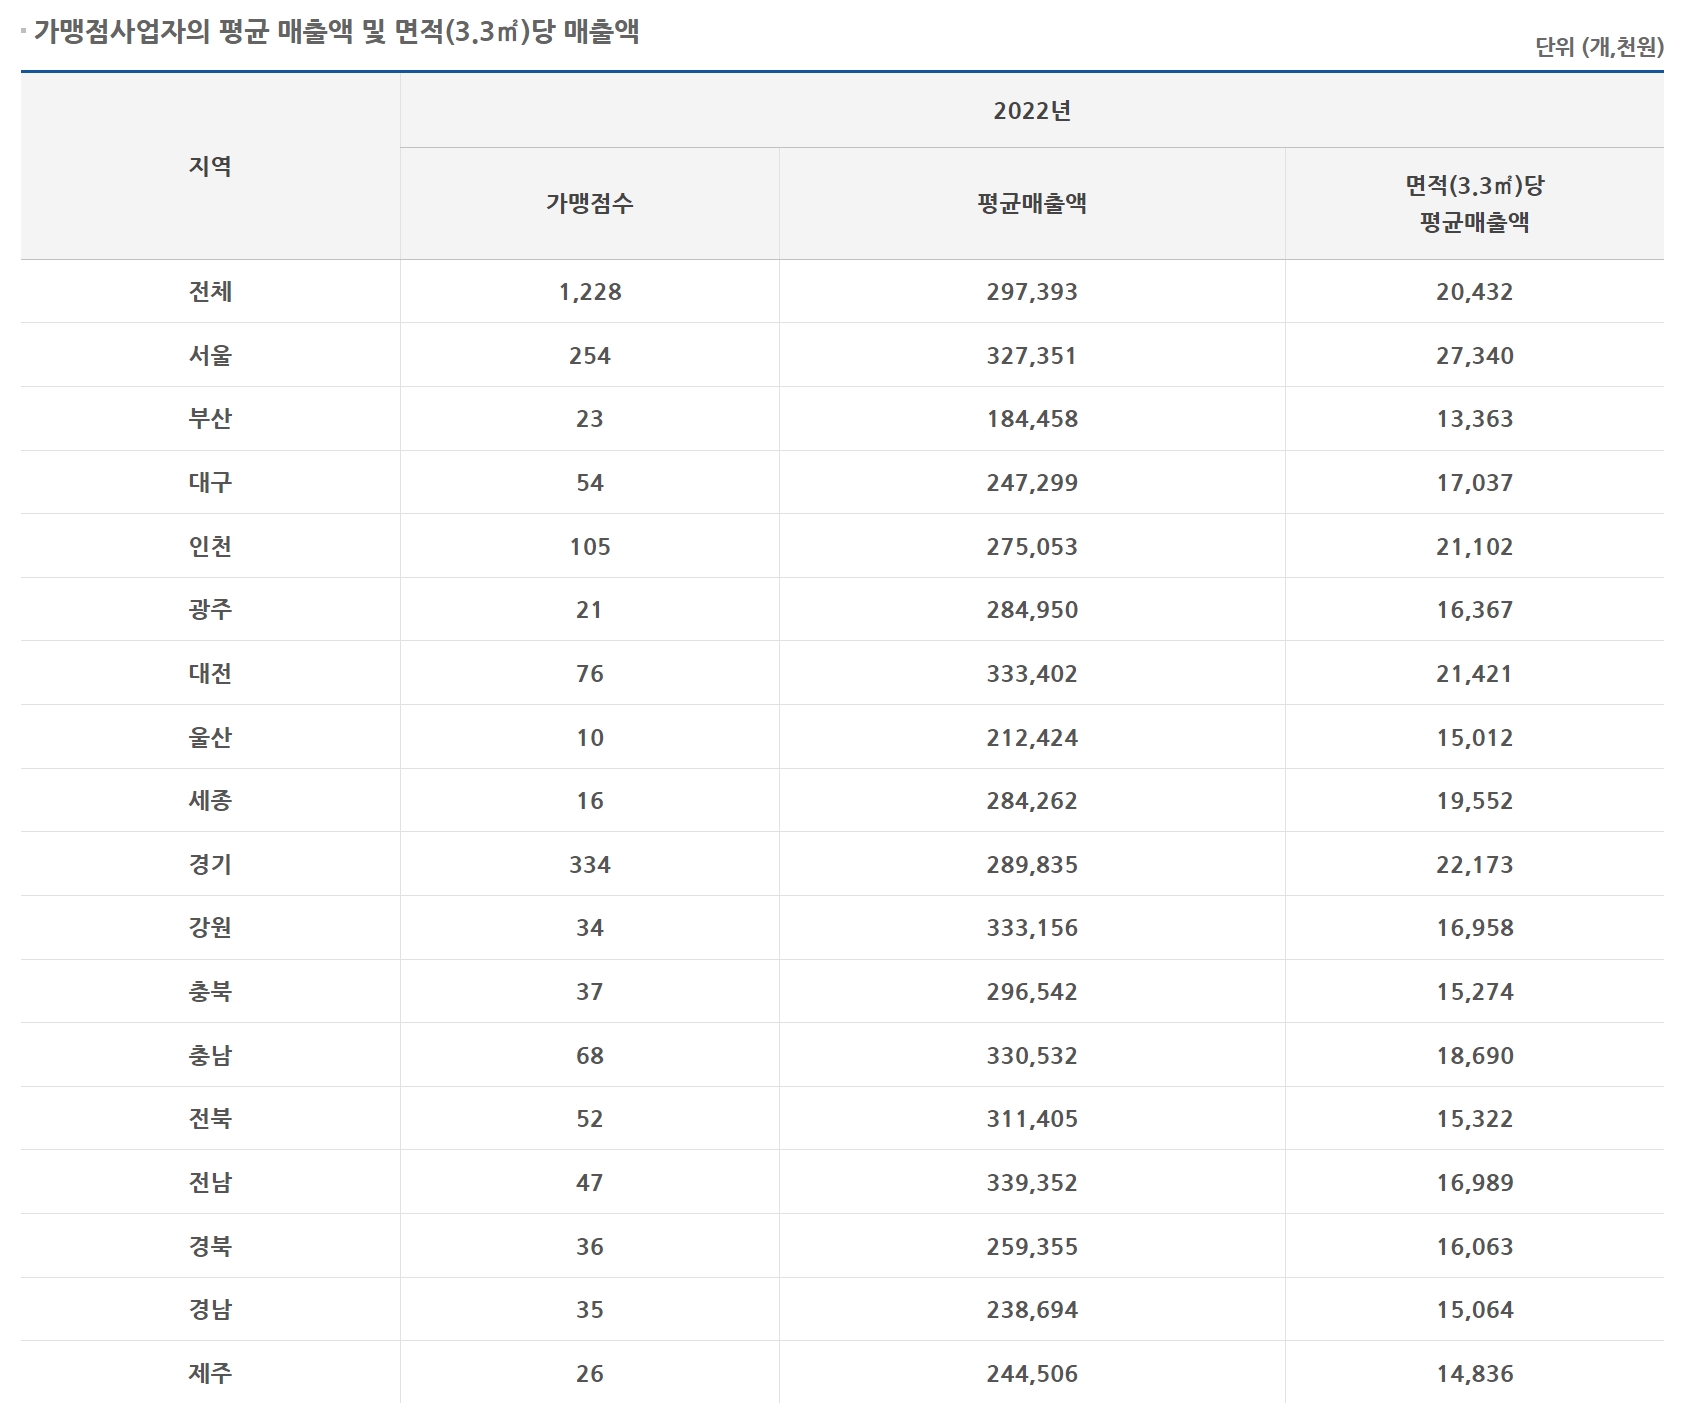 빽다방-매출자료-2022년(출처. 공정거래위원회)